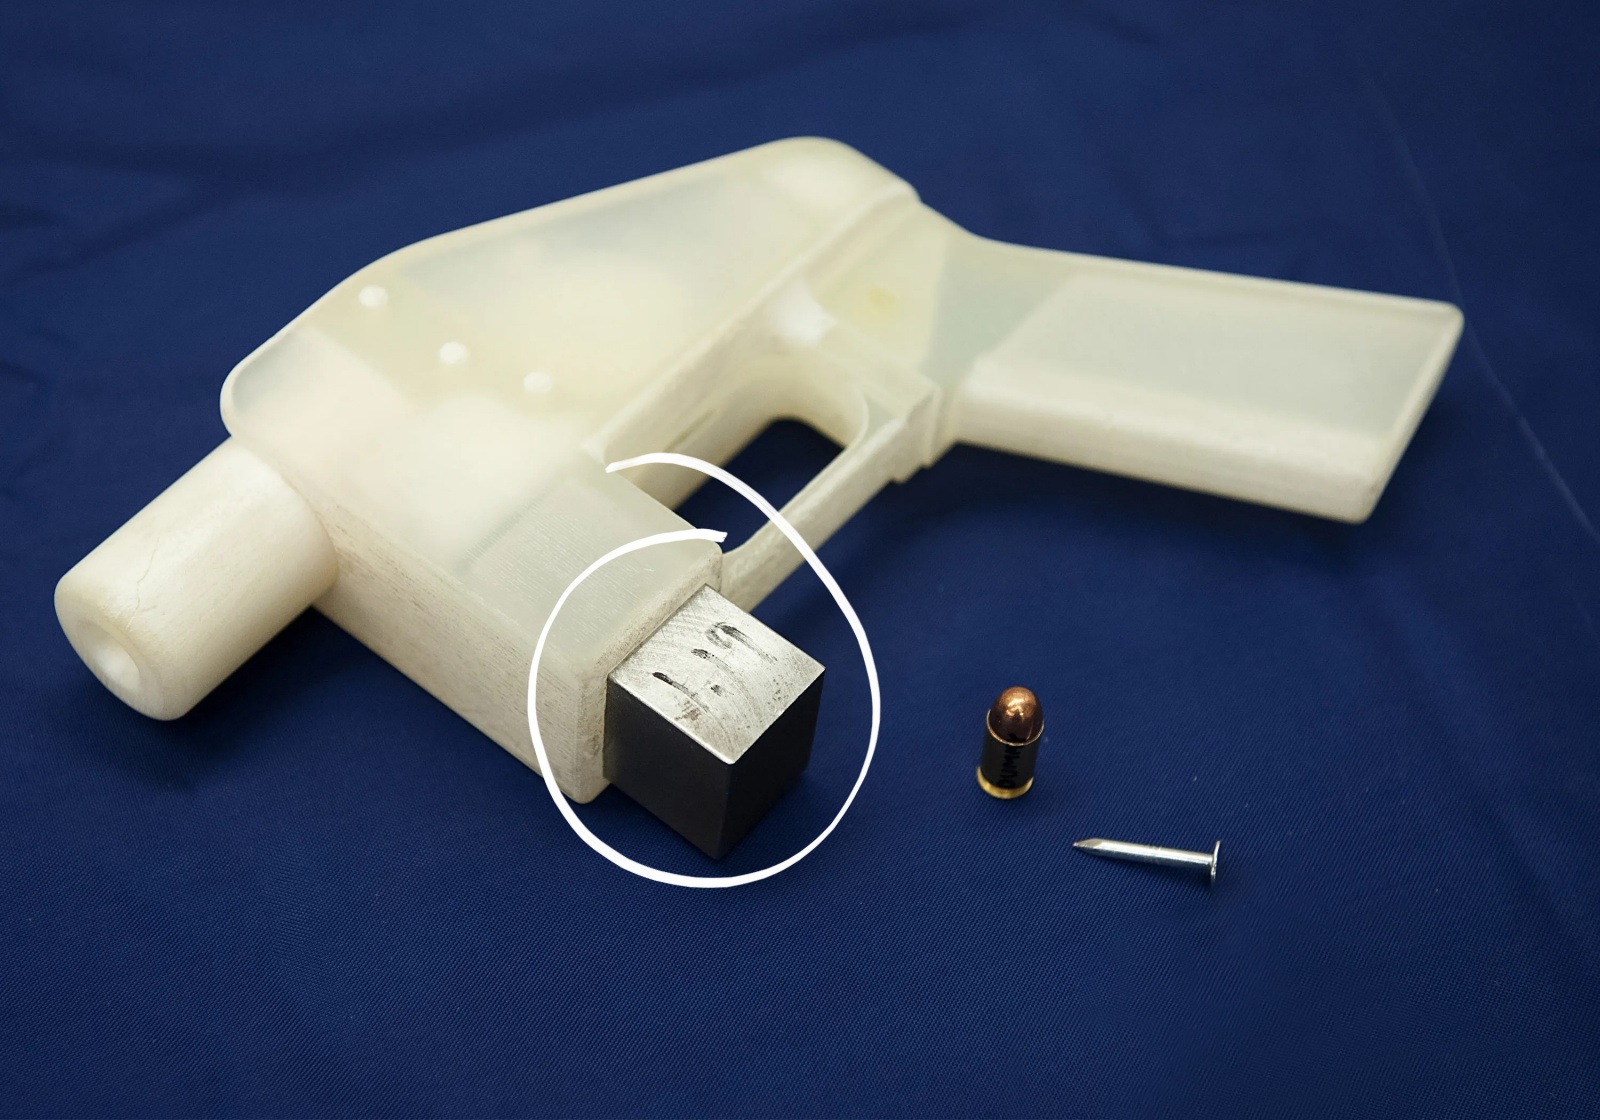 Огнестрельный DIY: история и перспективы 3D-печатного оружия - 23